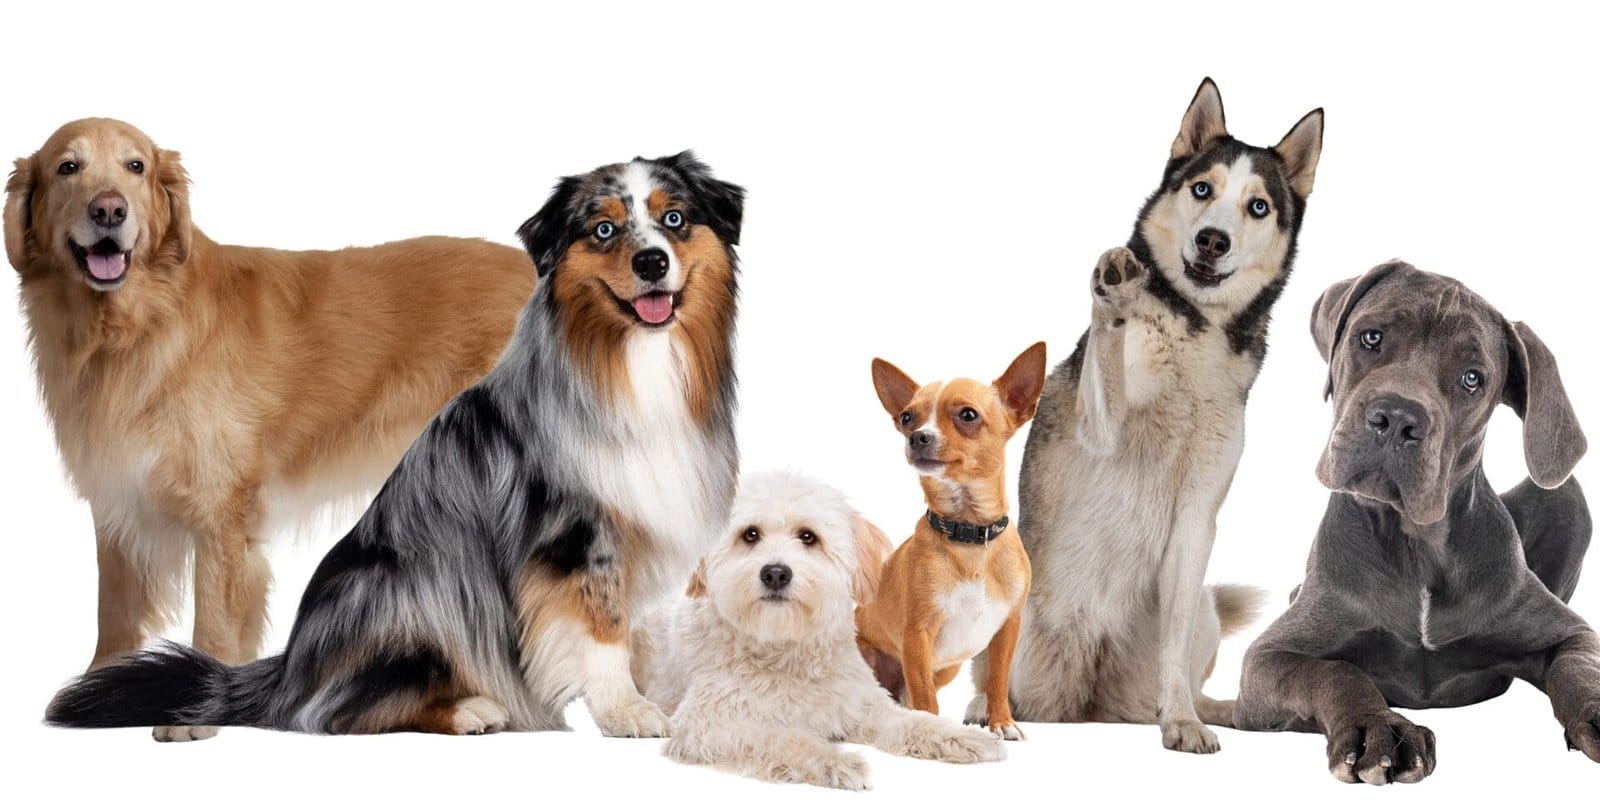 hygiejne i hundepensionen - Hirtshals Hundepension - nye flere hunde - Hvordan bliver hundene aktiveret i hundepensionen?